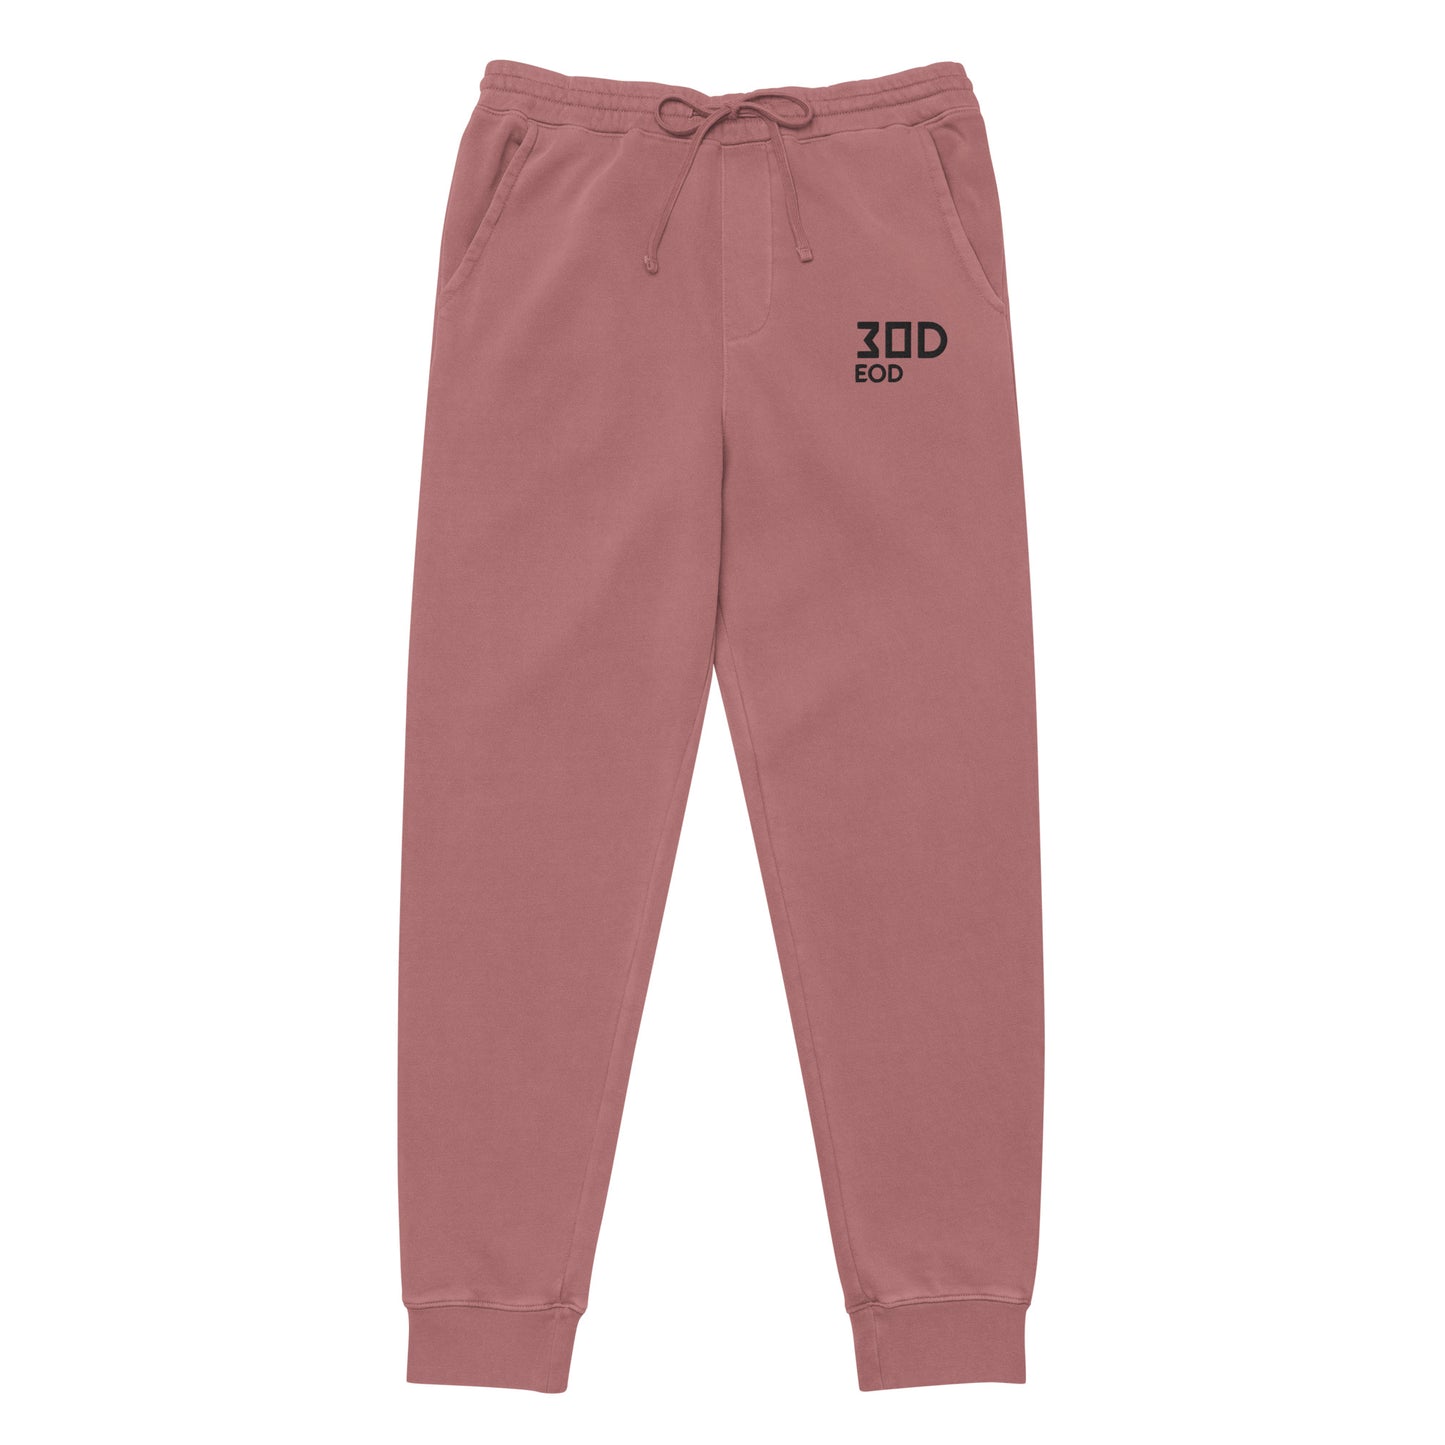 EOD 30D Unisex Pigment Dyed Sweatpants